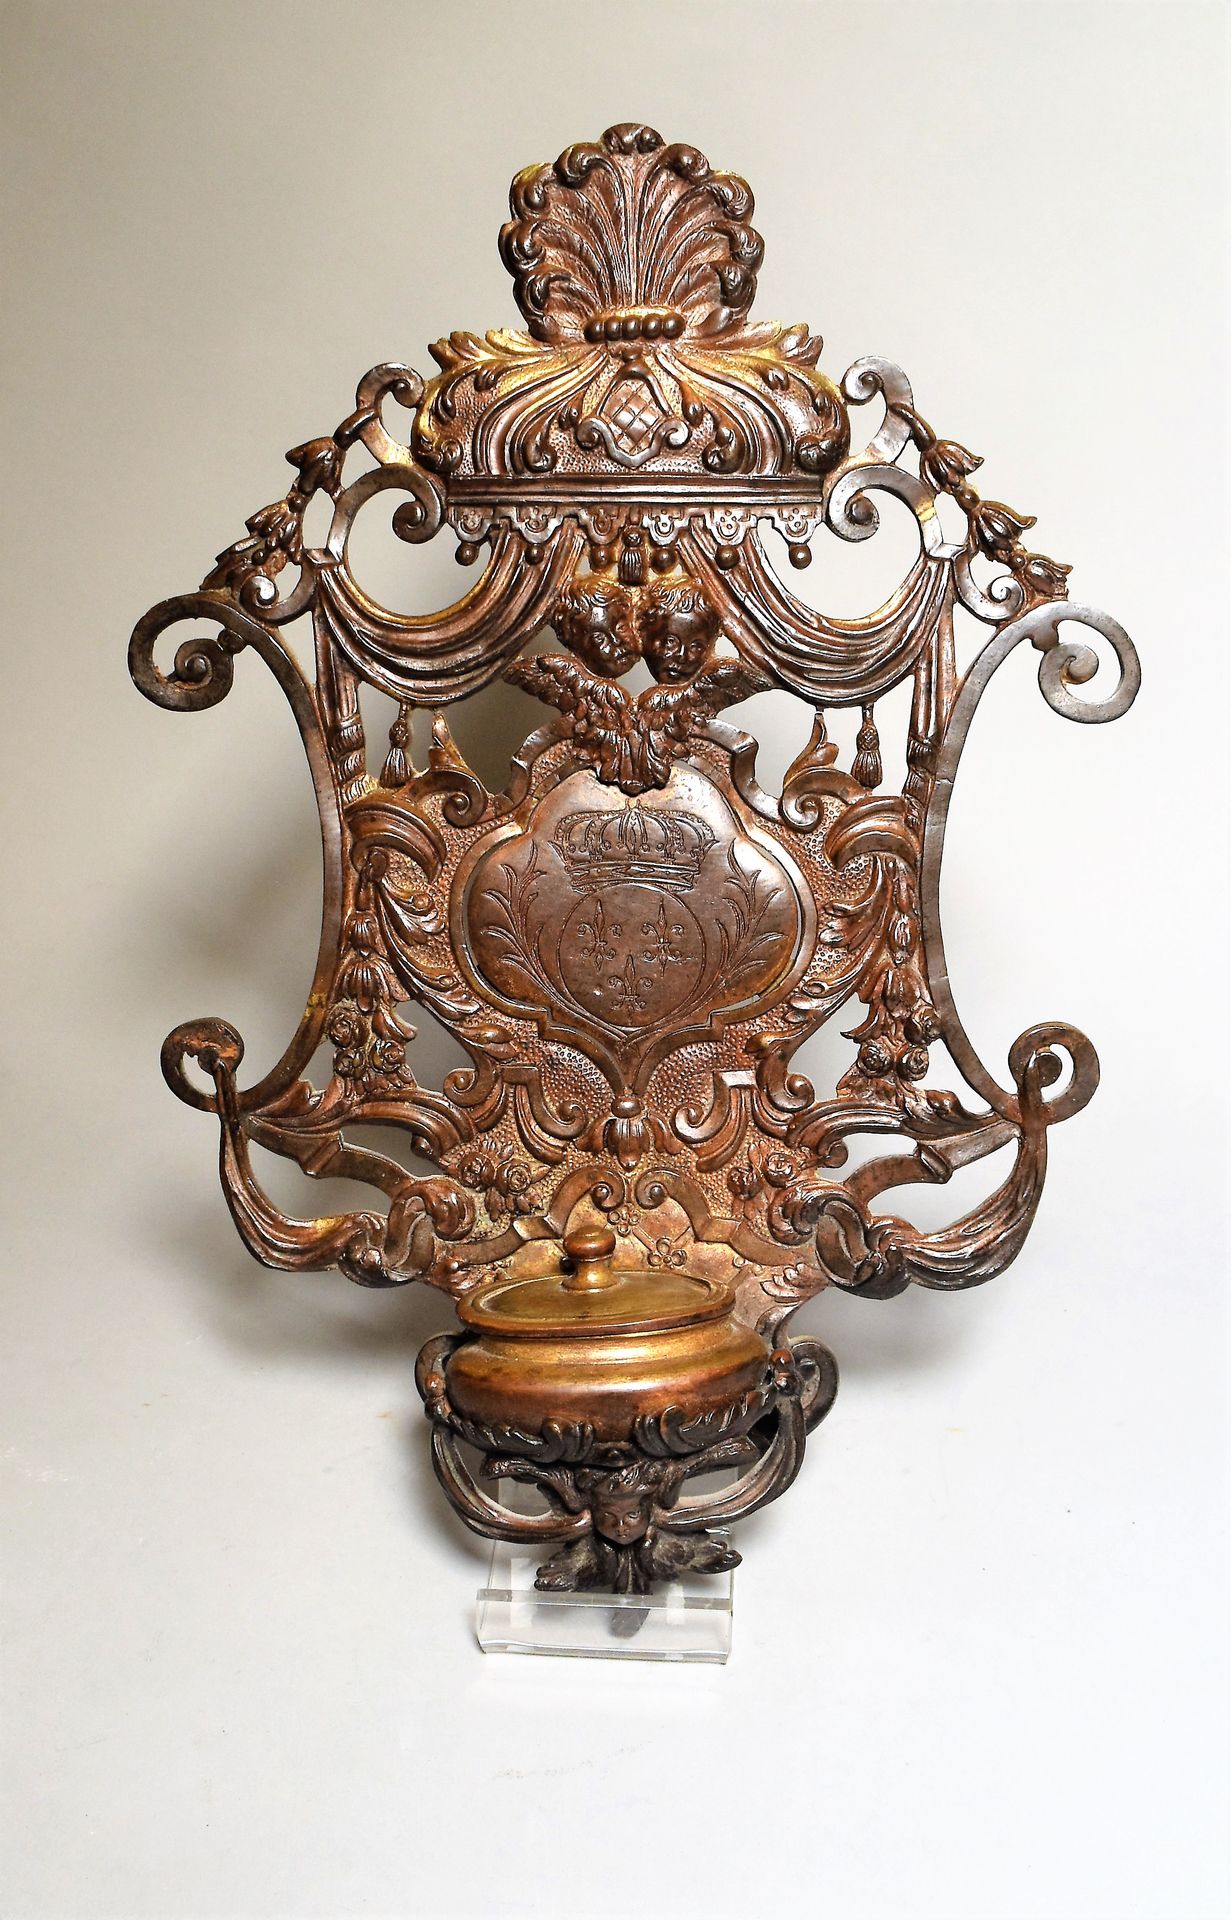 Null 饰有小天使和贝壳的镂空铜质BENITIER。中间刻着法国的徽章。19世纪初。高32 - 宽21厘米

交付给书房的地段